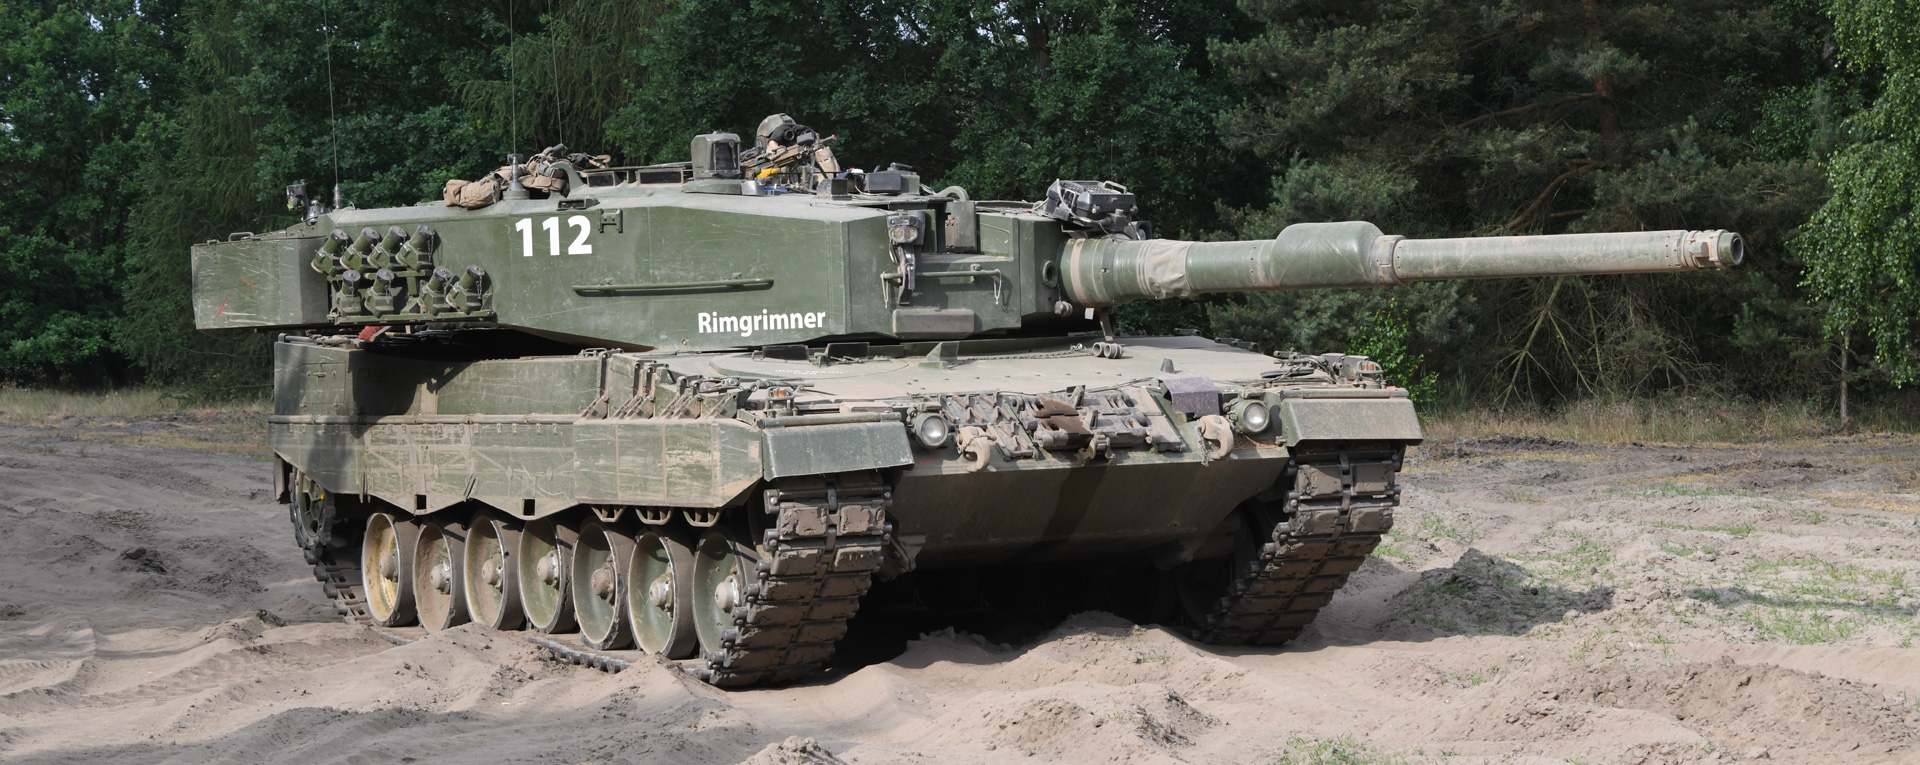 Γερμανικές και βρετανικές εταιρείες έτοιμες να στείλουν Leopard και Challenger στην Ουκρανία